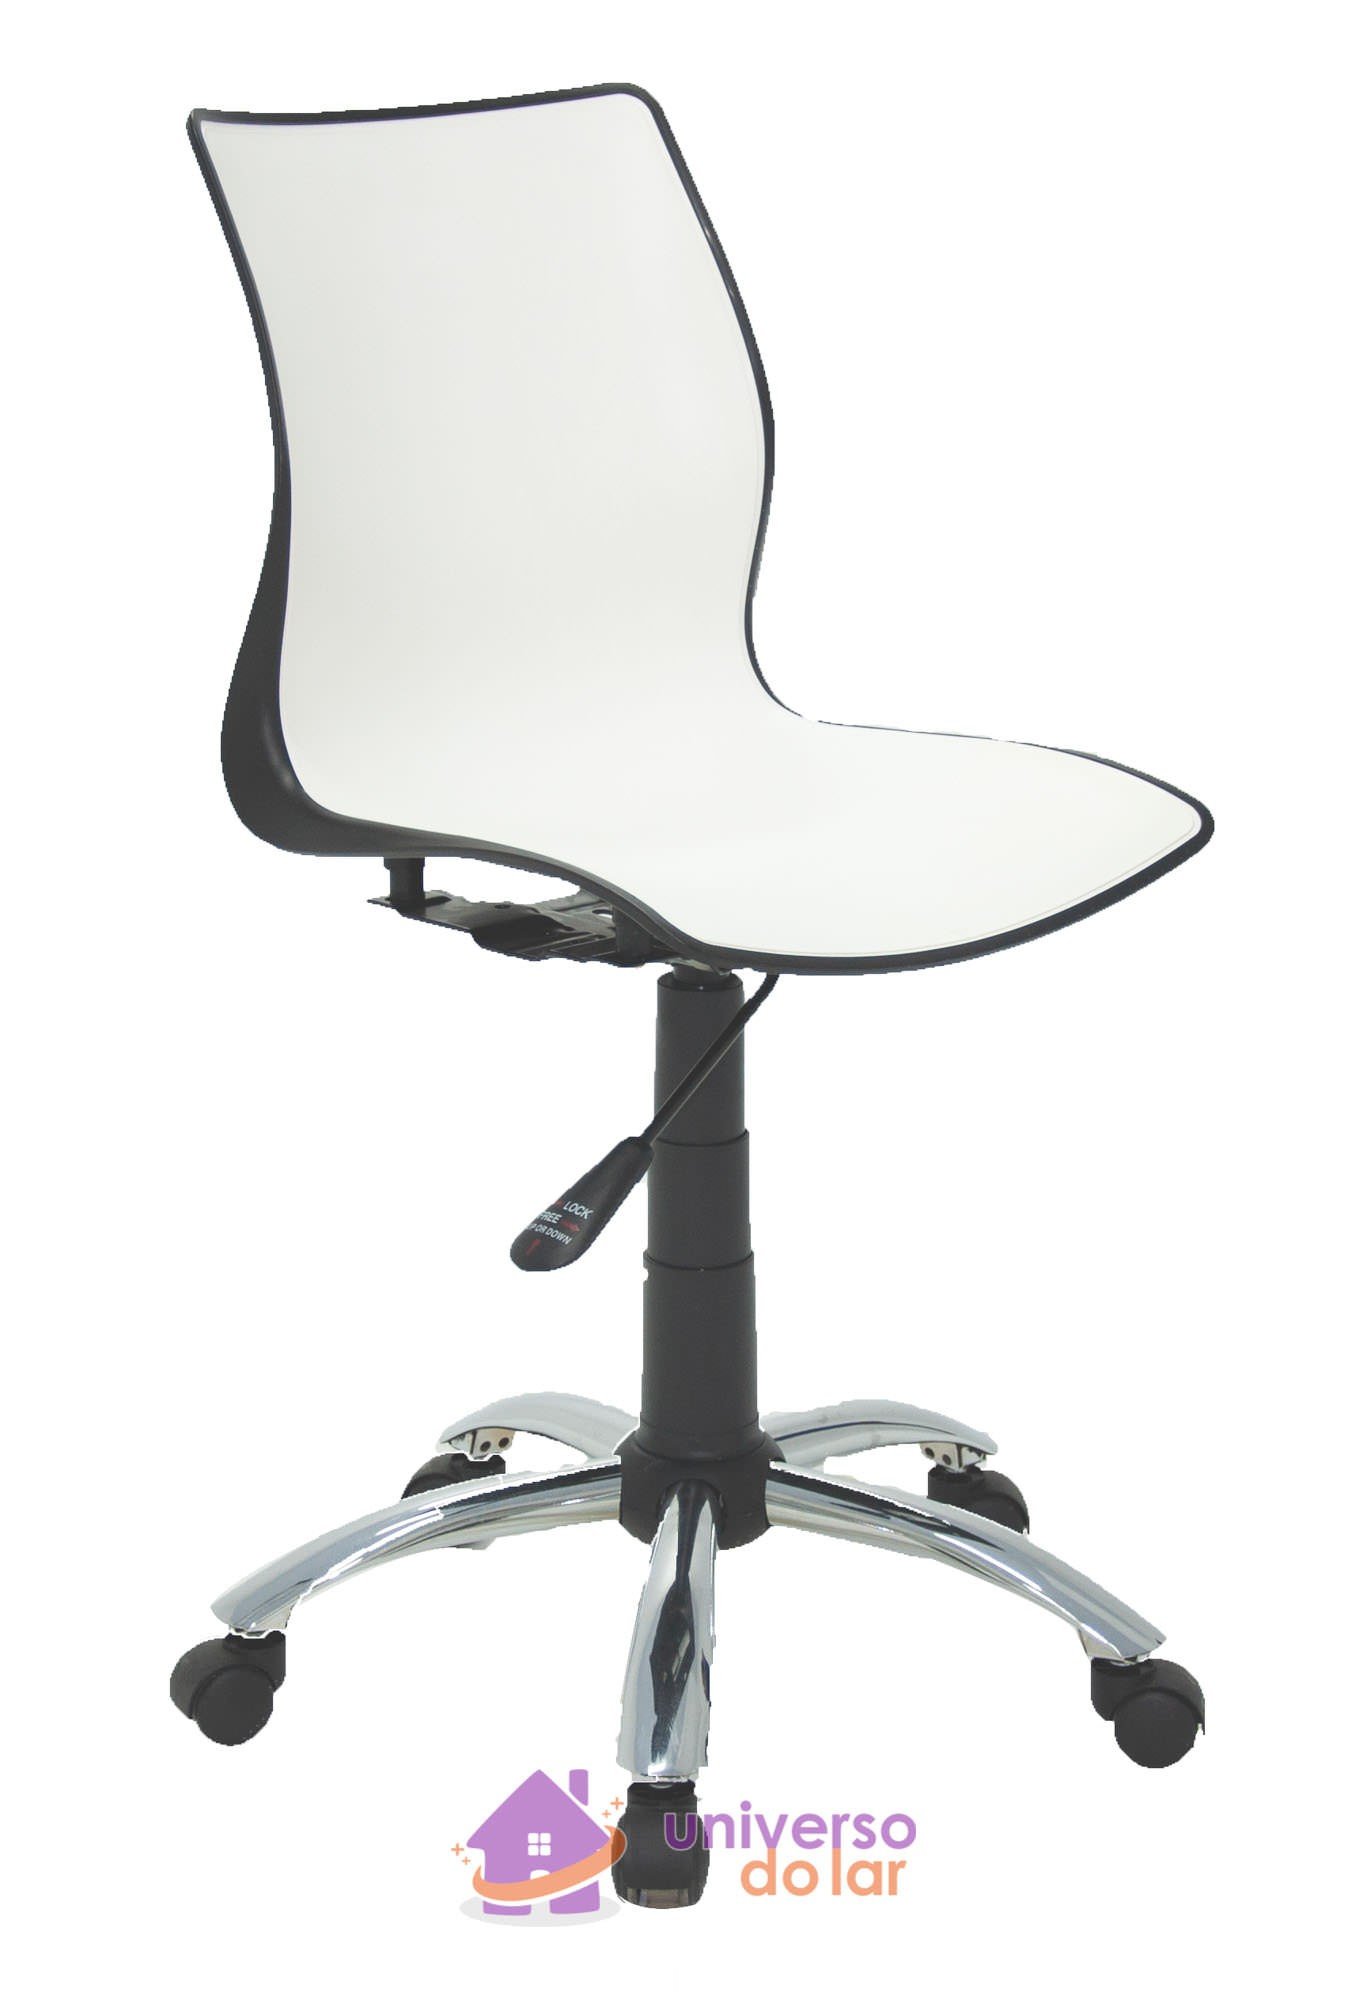 Cadeira Maja Preta/Branca sem Braços em Polipropileno com Rodízio em Aço Cromado